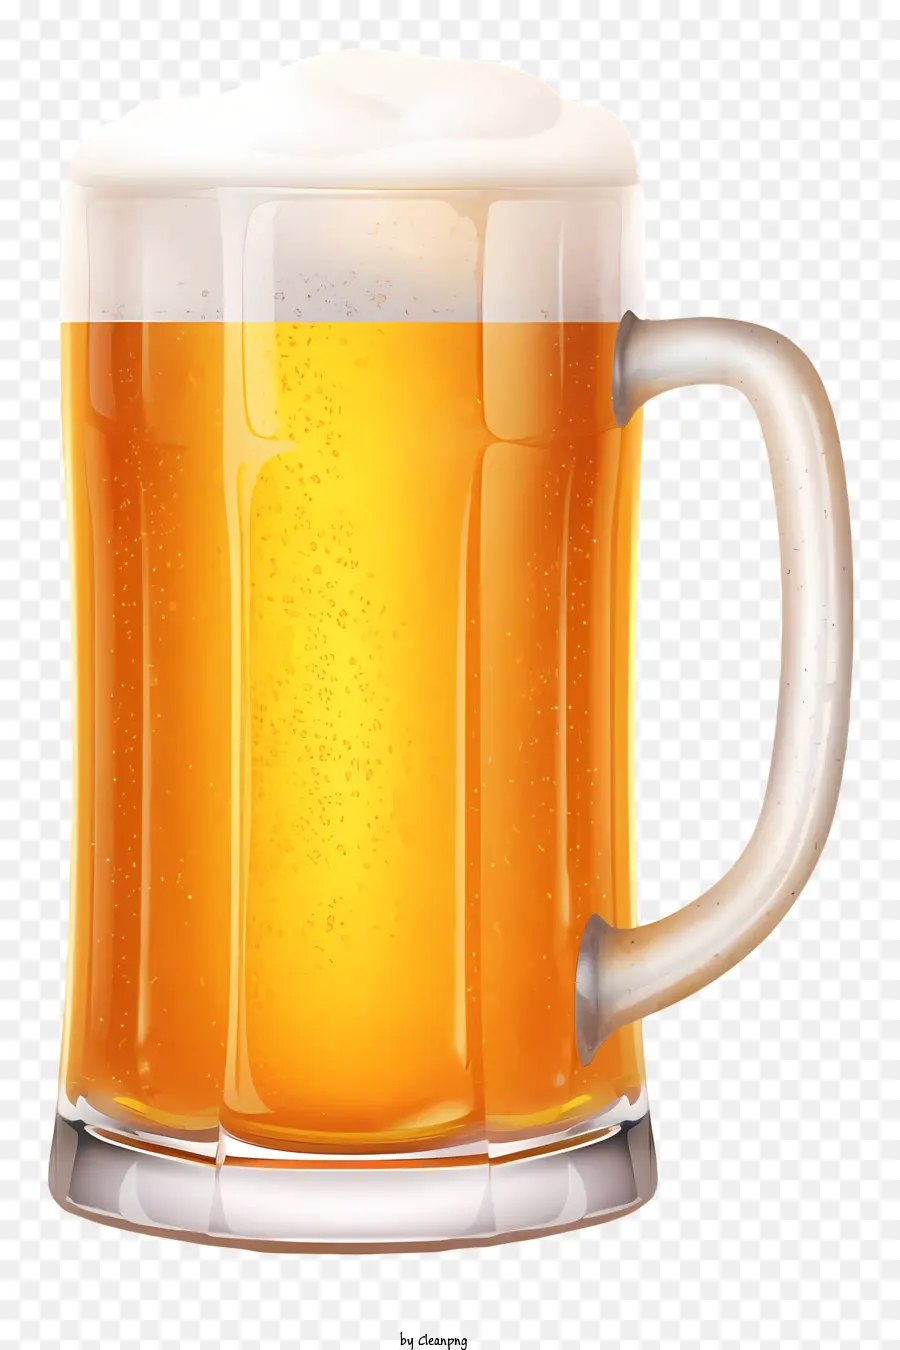 birra tazza di vetro schiuma di birra dorata non filtrata - Tazza di vetro piena di schiuma e birra dorata